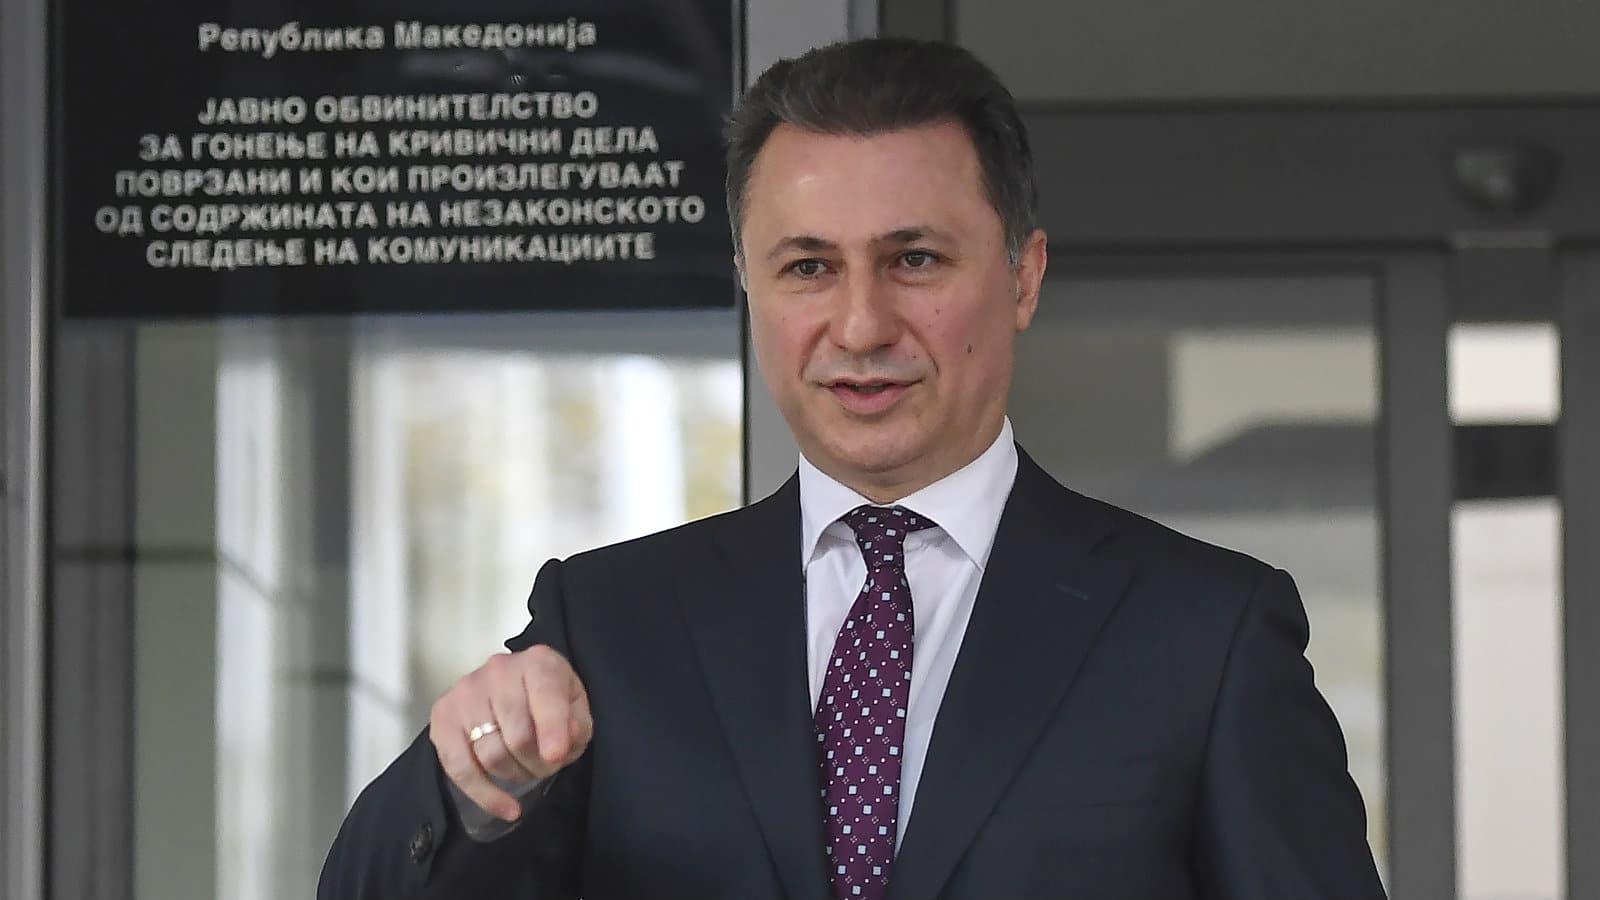 Bivši makedonski premijer u odsustvu osuđen na sedam godina zatvora